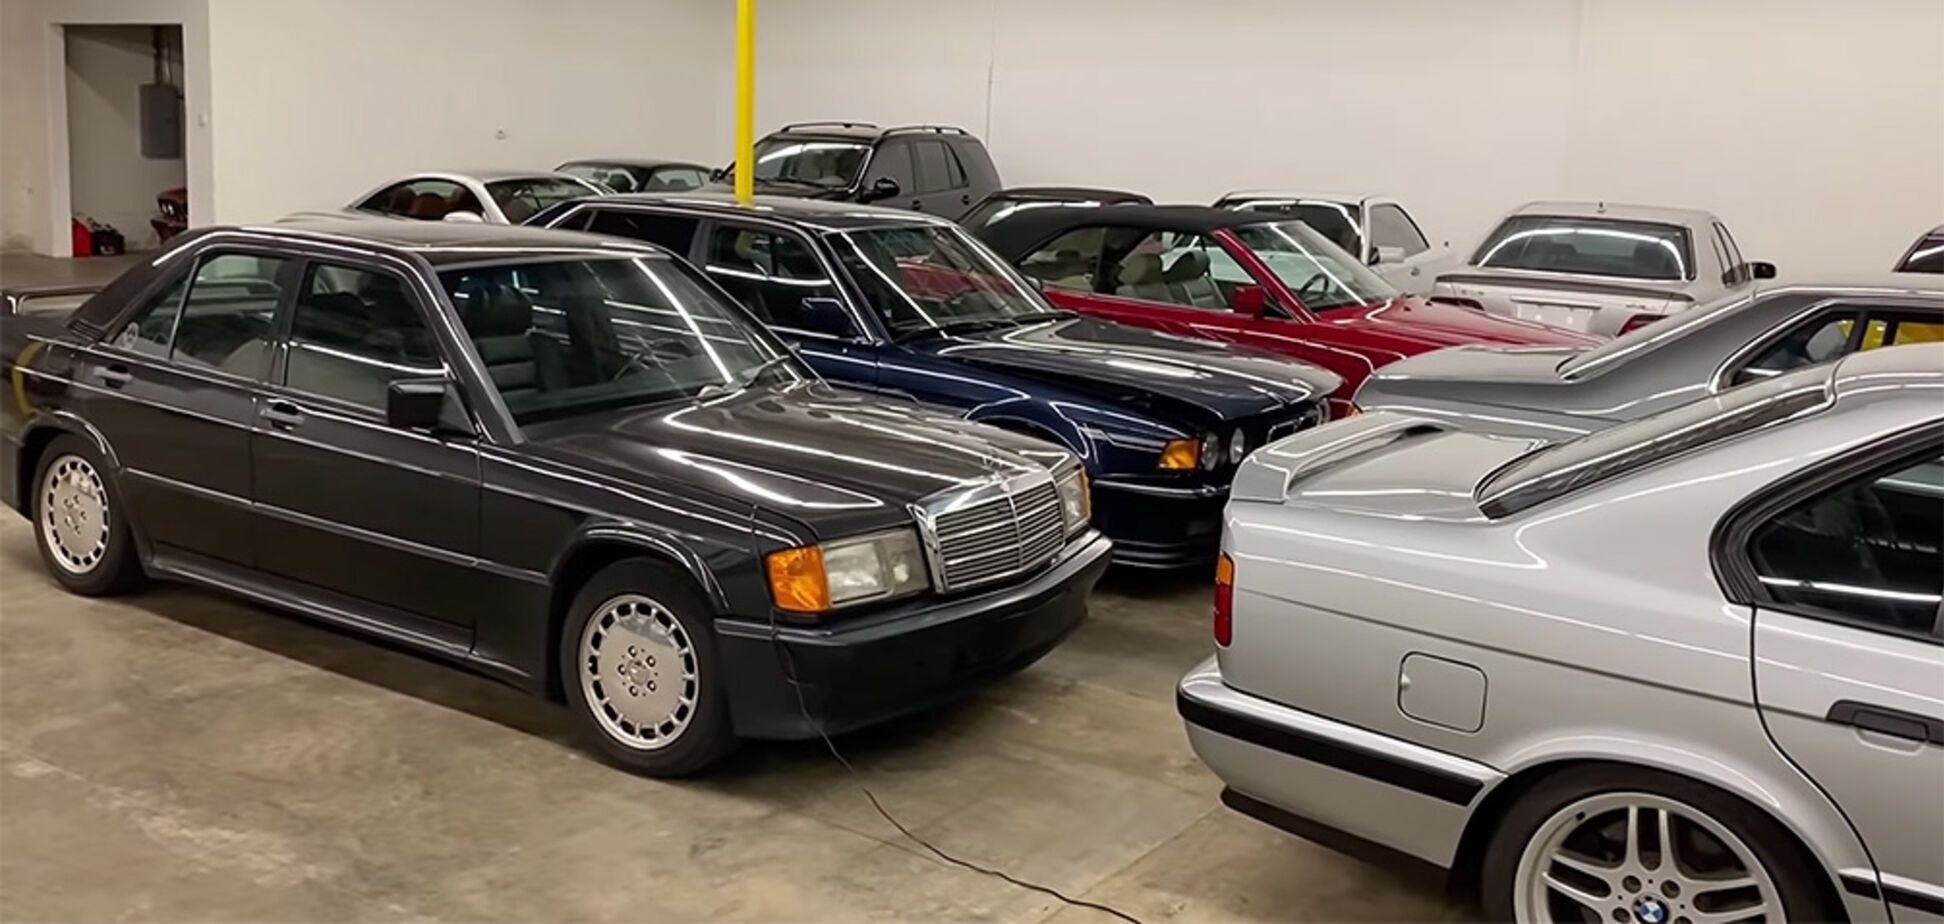 Блогер нашел гараж мечты с четырьмя десятками культовых Mercedes и BMW